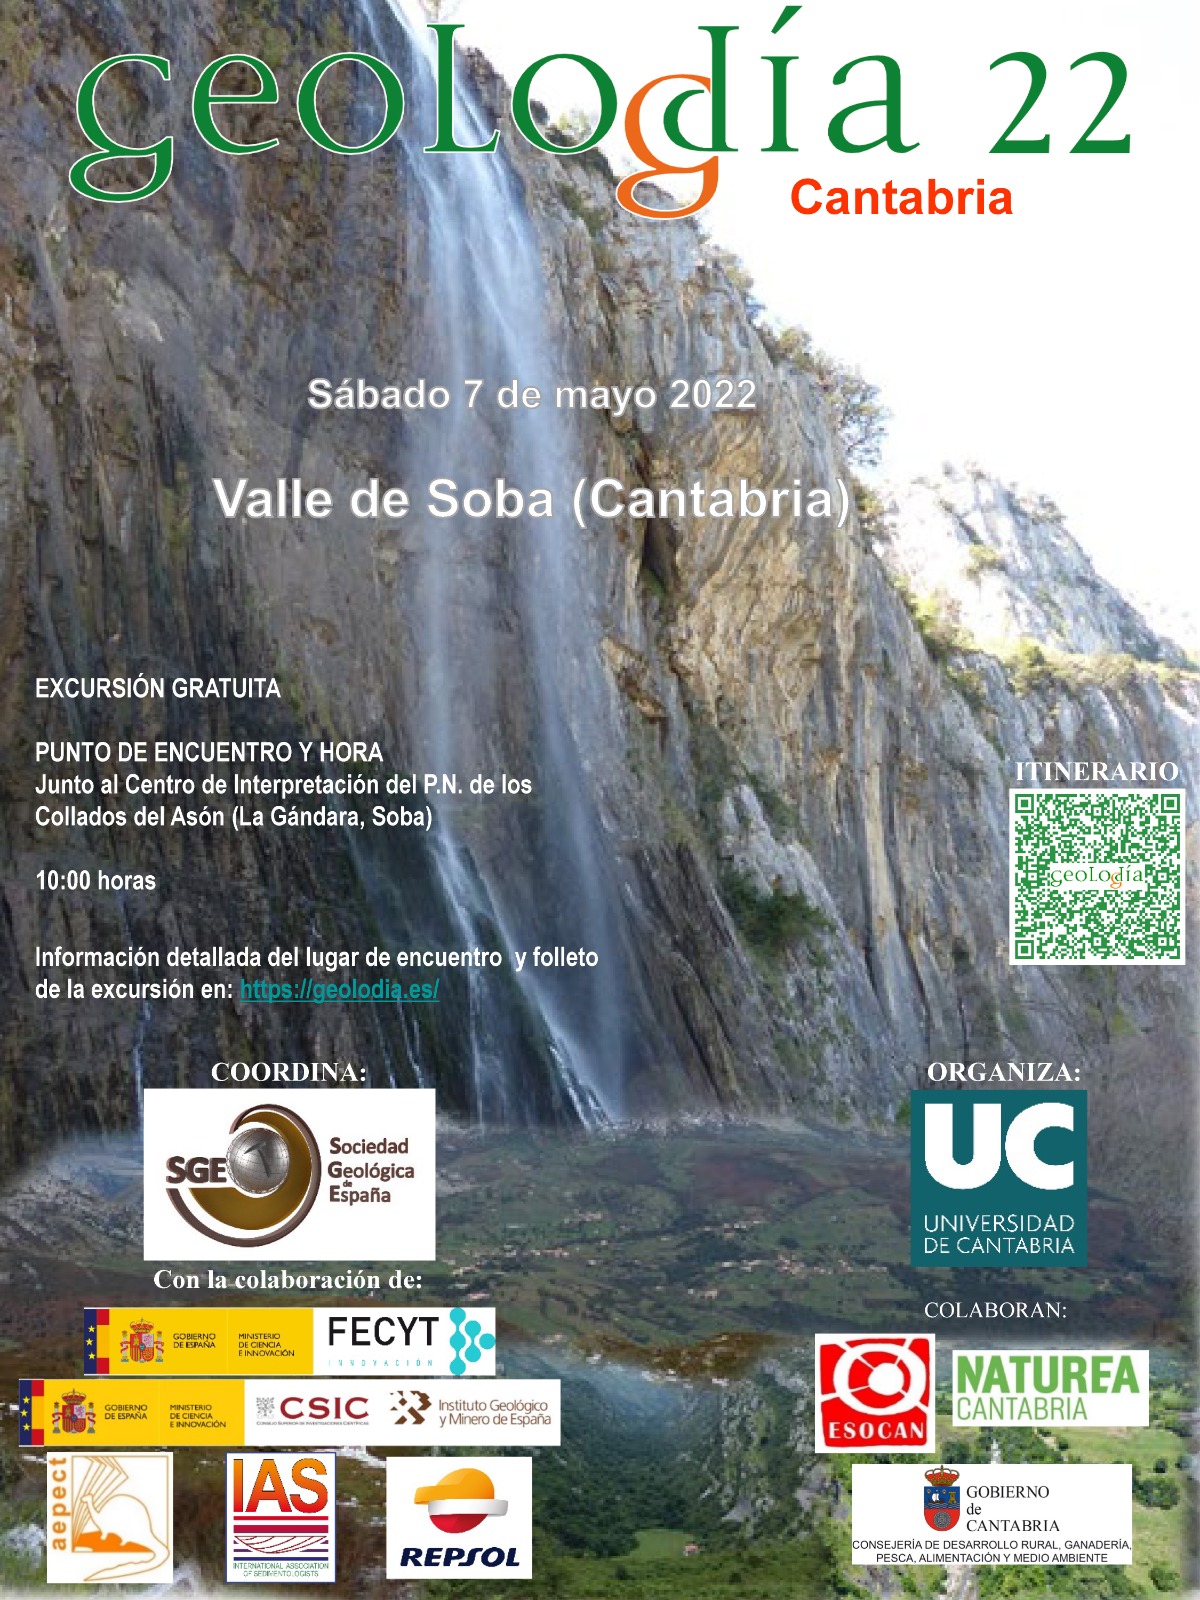 Geolodía Cantabria 2022 – Excursión gratuita